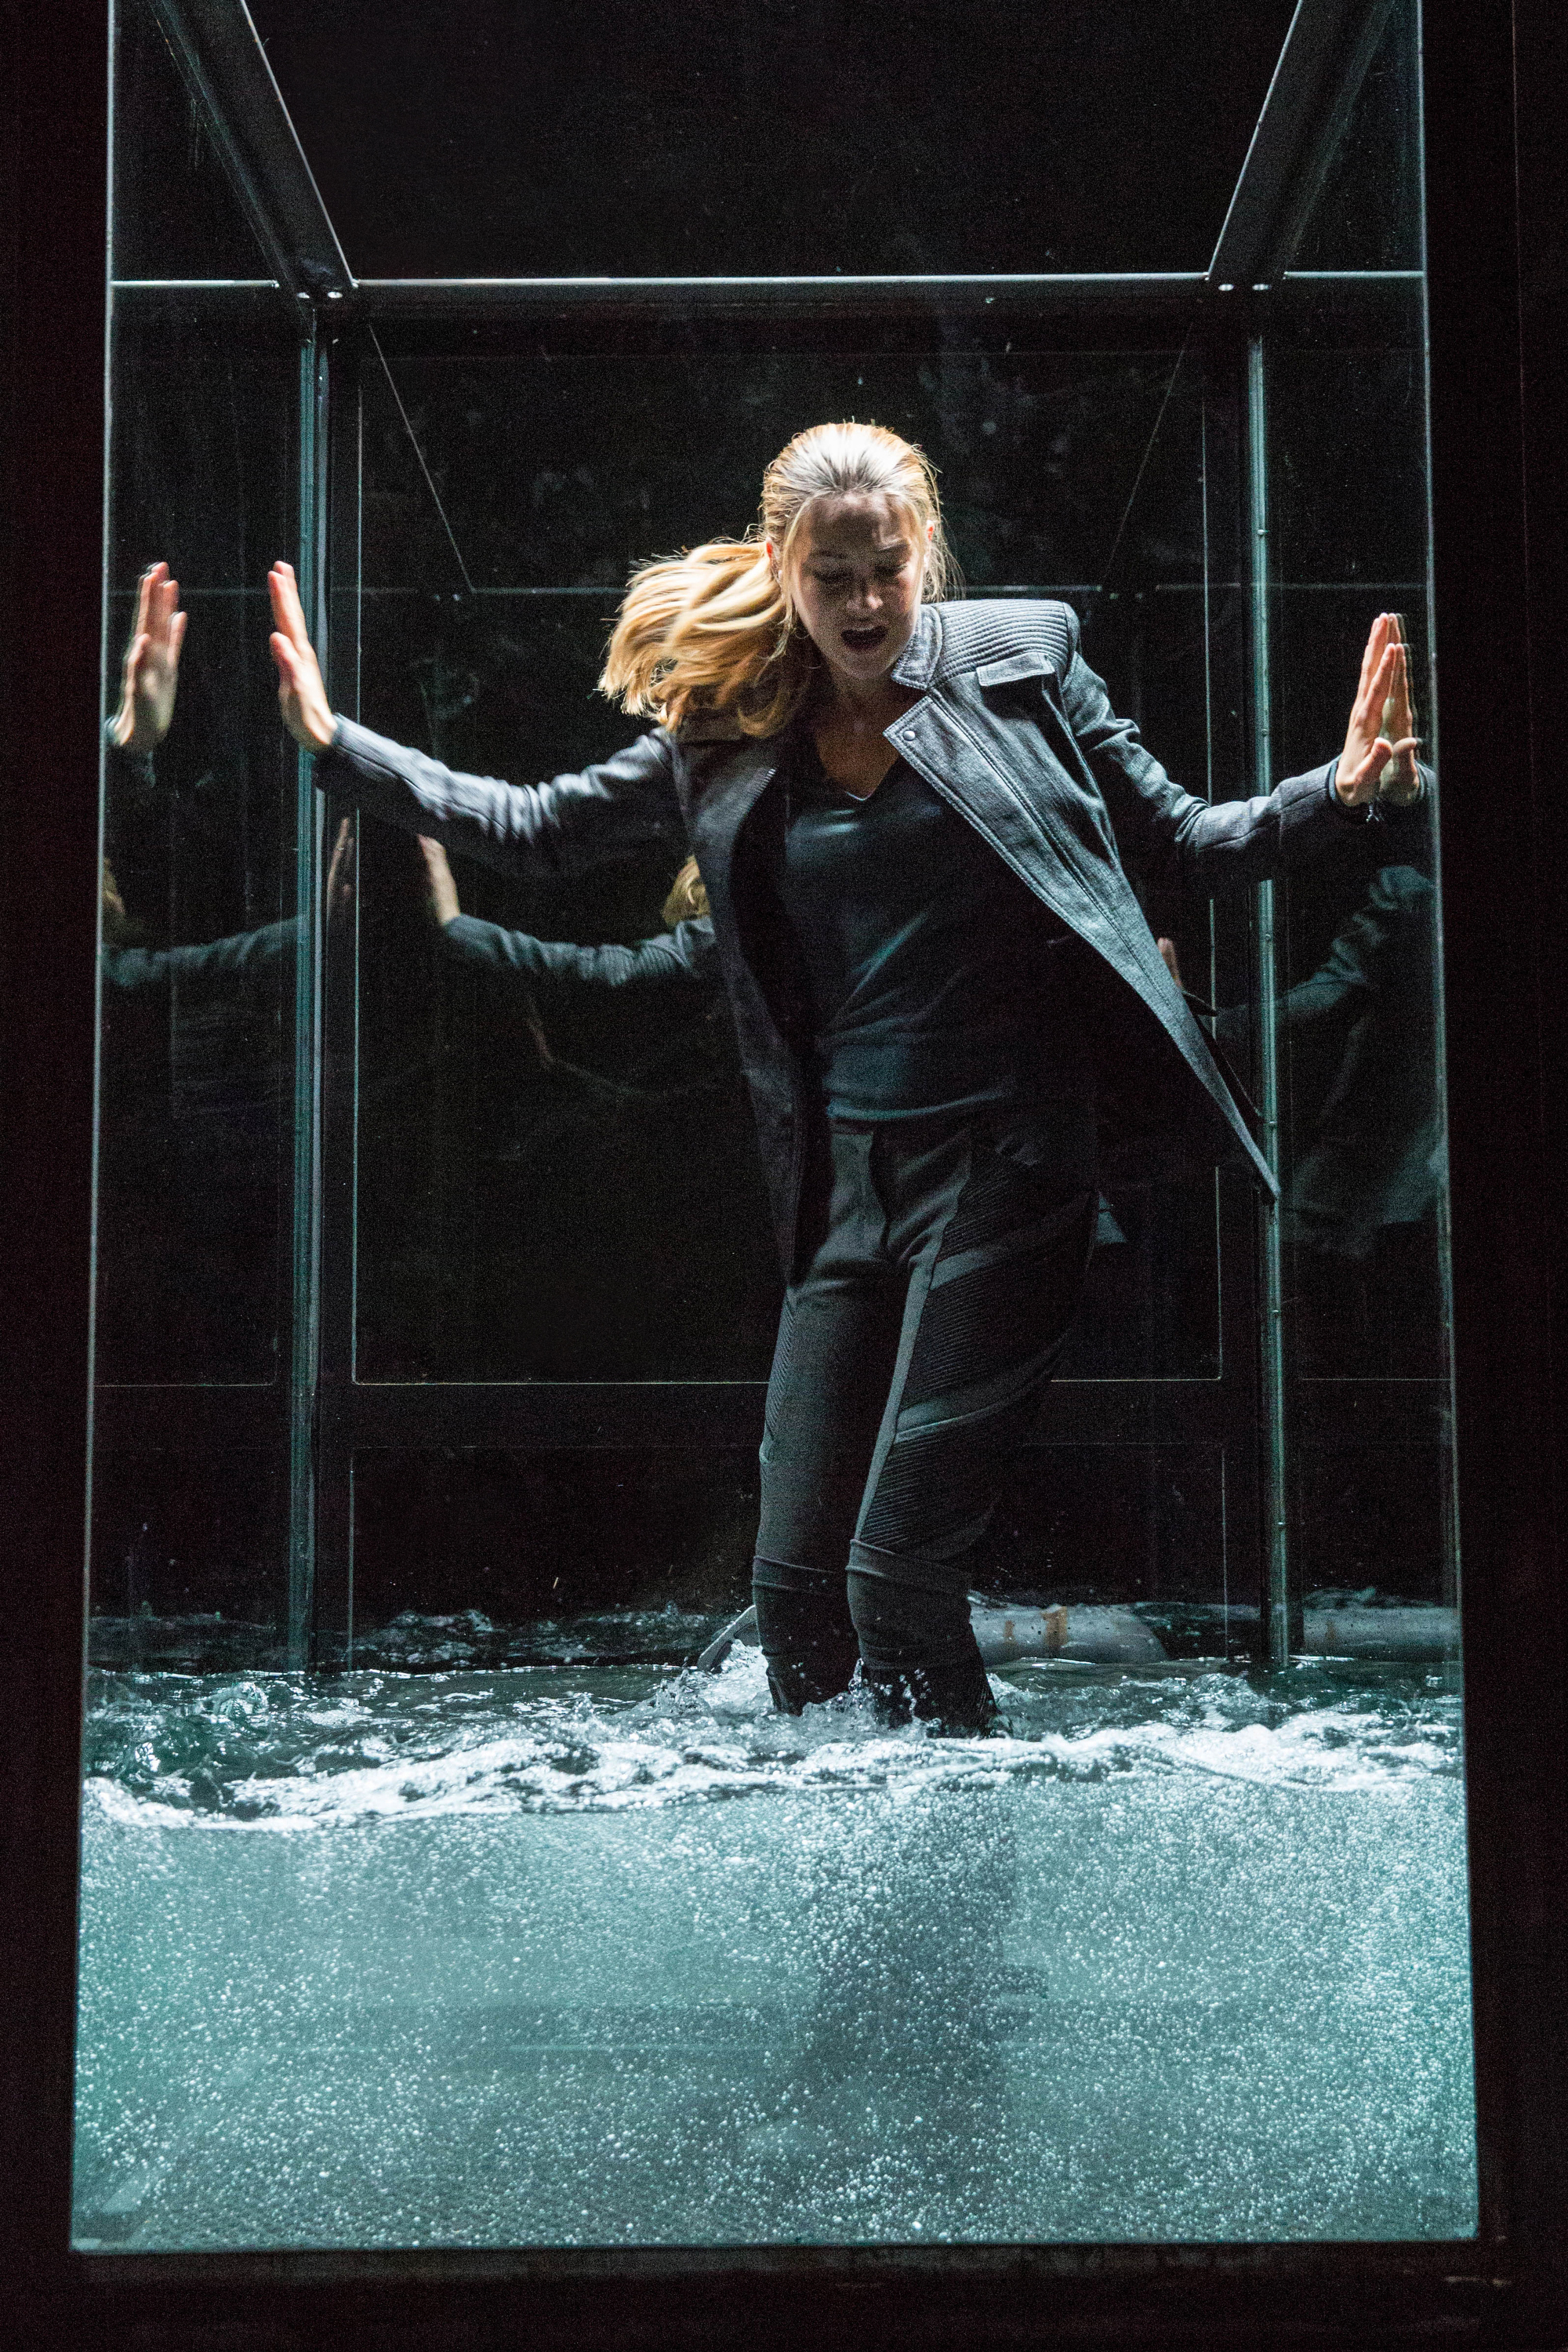 Still of Shailene Woodley in Divergente (2014)